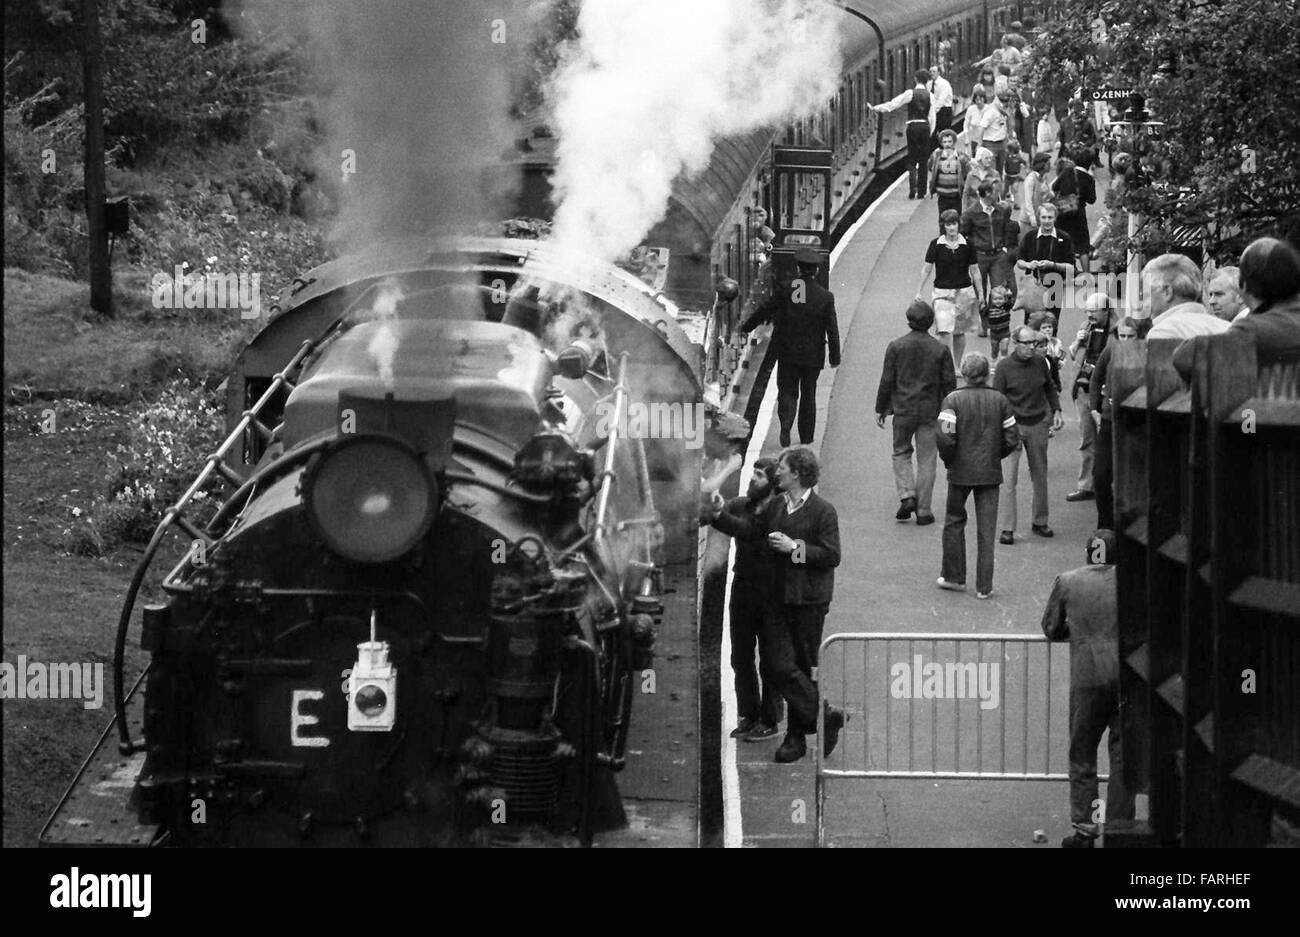 Bahnhof Haworth, West Yorkshire circa 1982 schwarz-weiß Archiv Bild. Heimat der Keighley und Wert Valley Railway, ist die KWVR mit freiwilligen besetzt. Mitarbeiter im Gespräch mit Fahrer und Feuerwehrmann und Passagiere beim Bahnhof Plattform einsteigen. Stockfoto